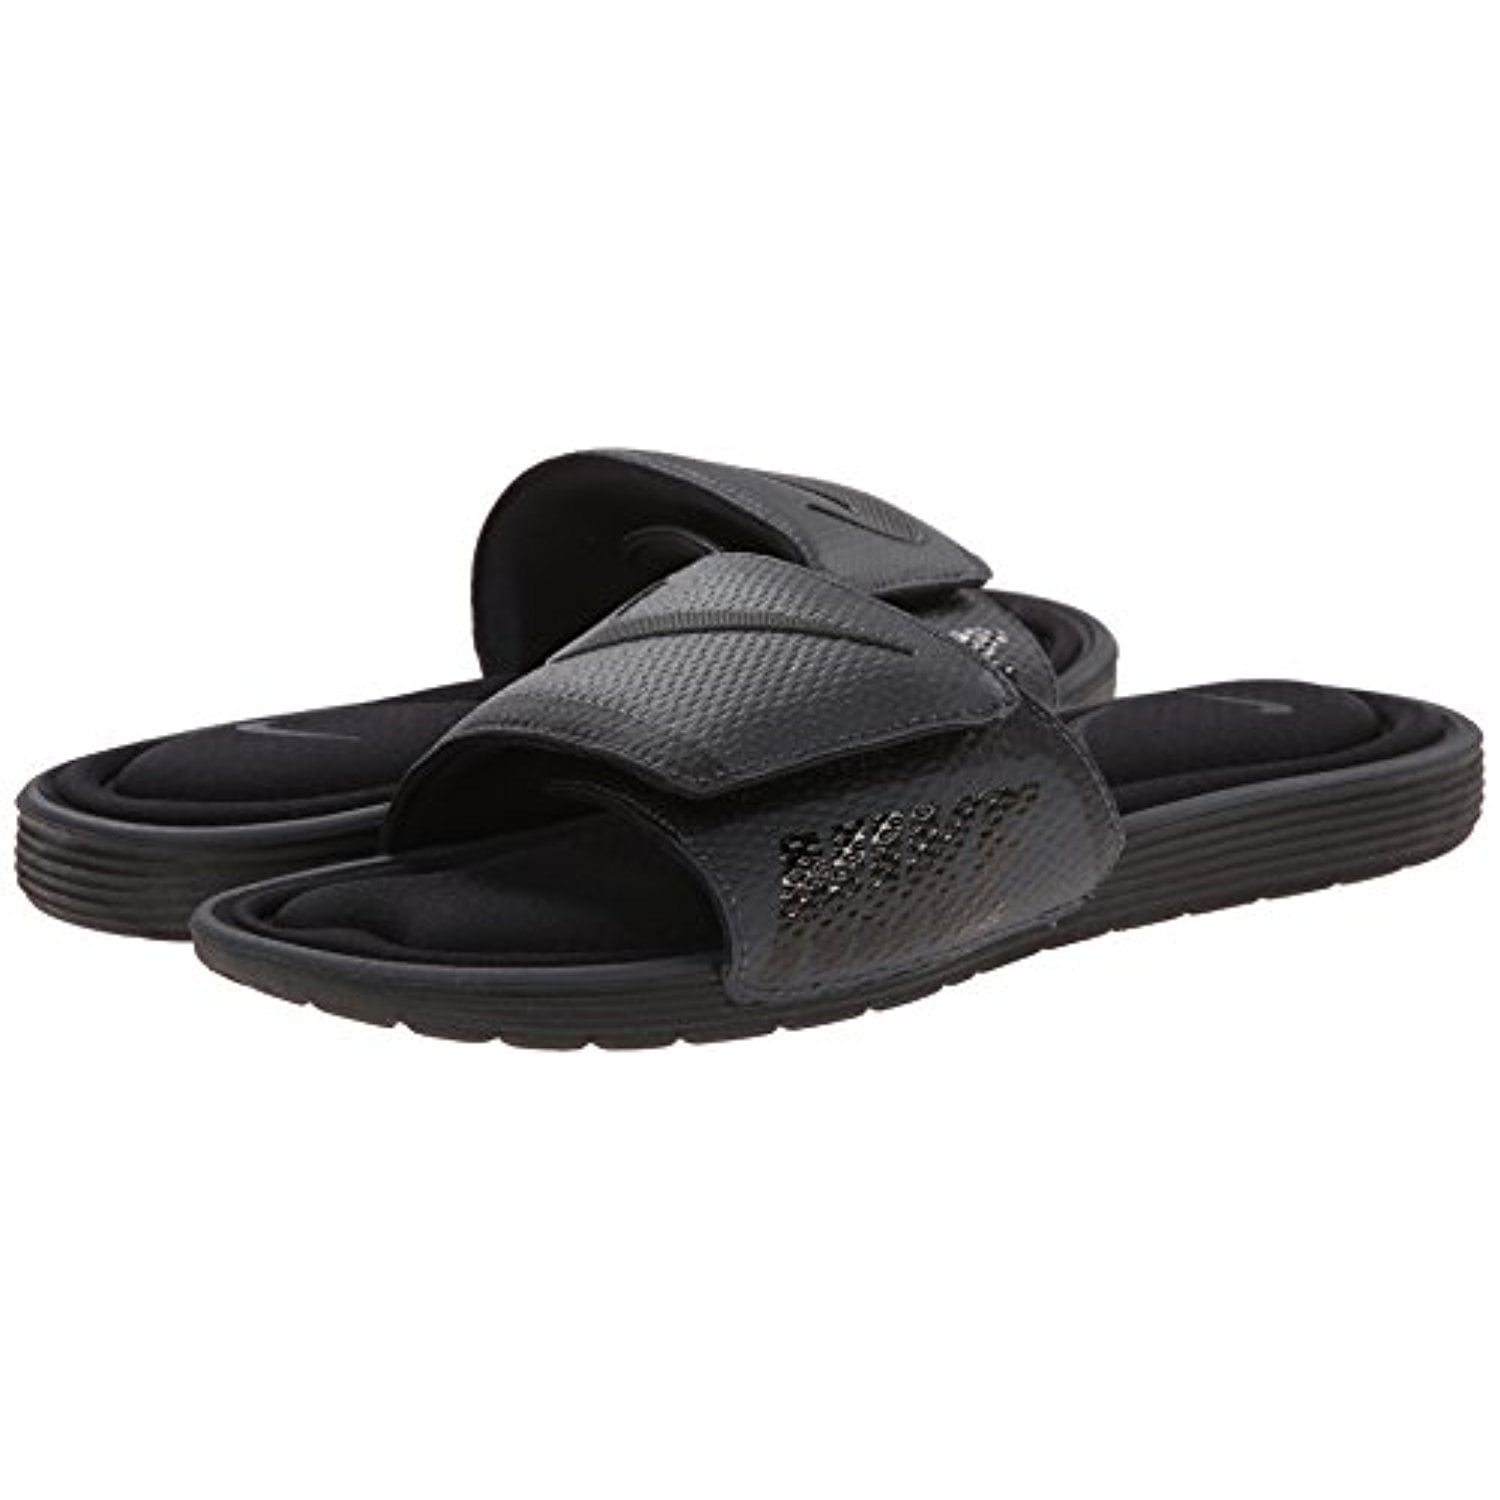 NIKE Solarsoft Comfort Slide Sandal, Black/Anthracite, 7 D(M) US - Walmart.com